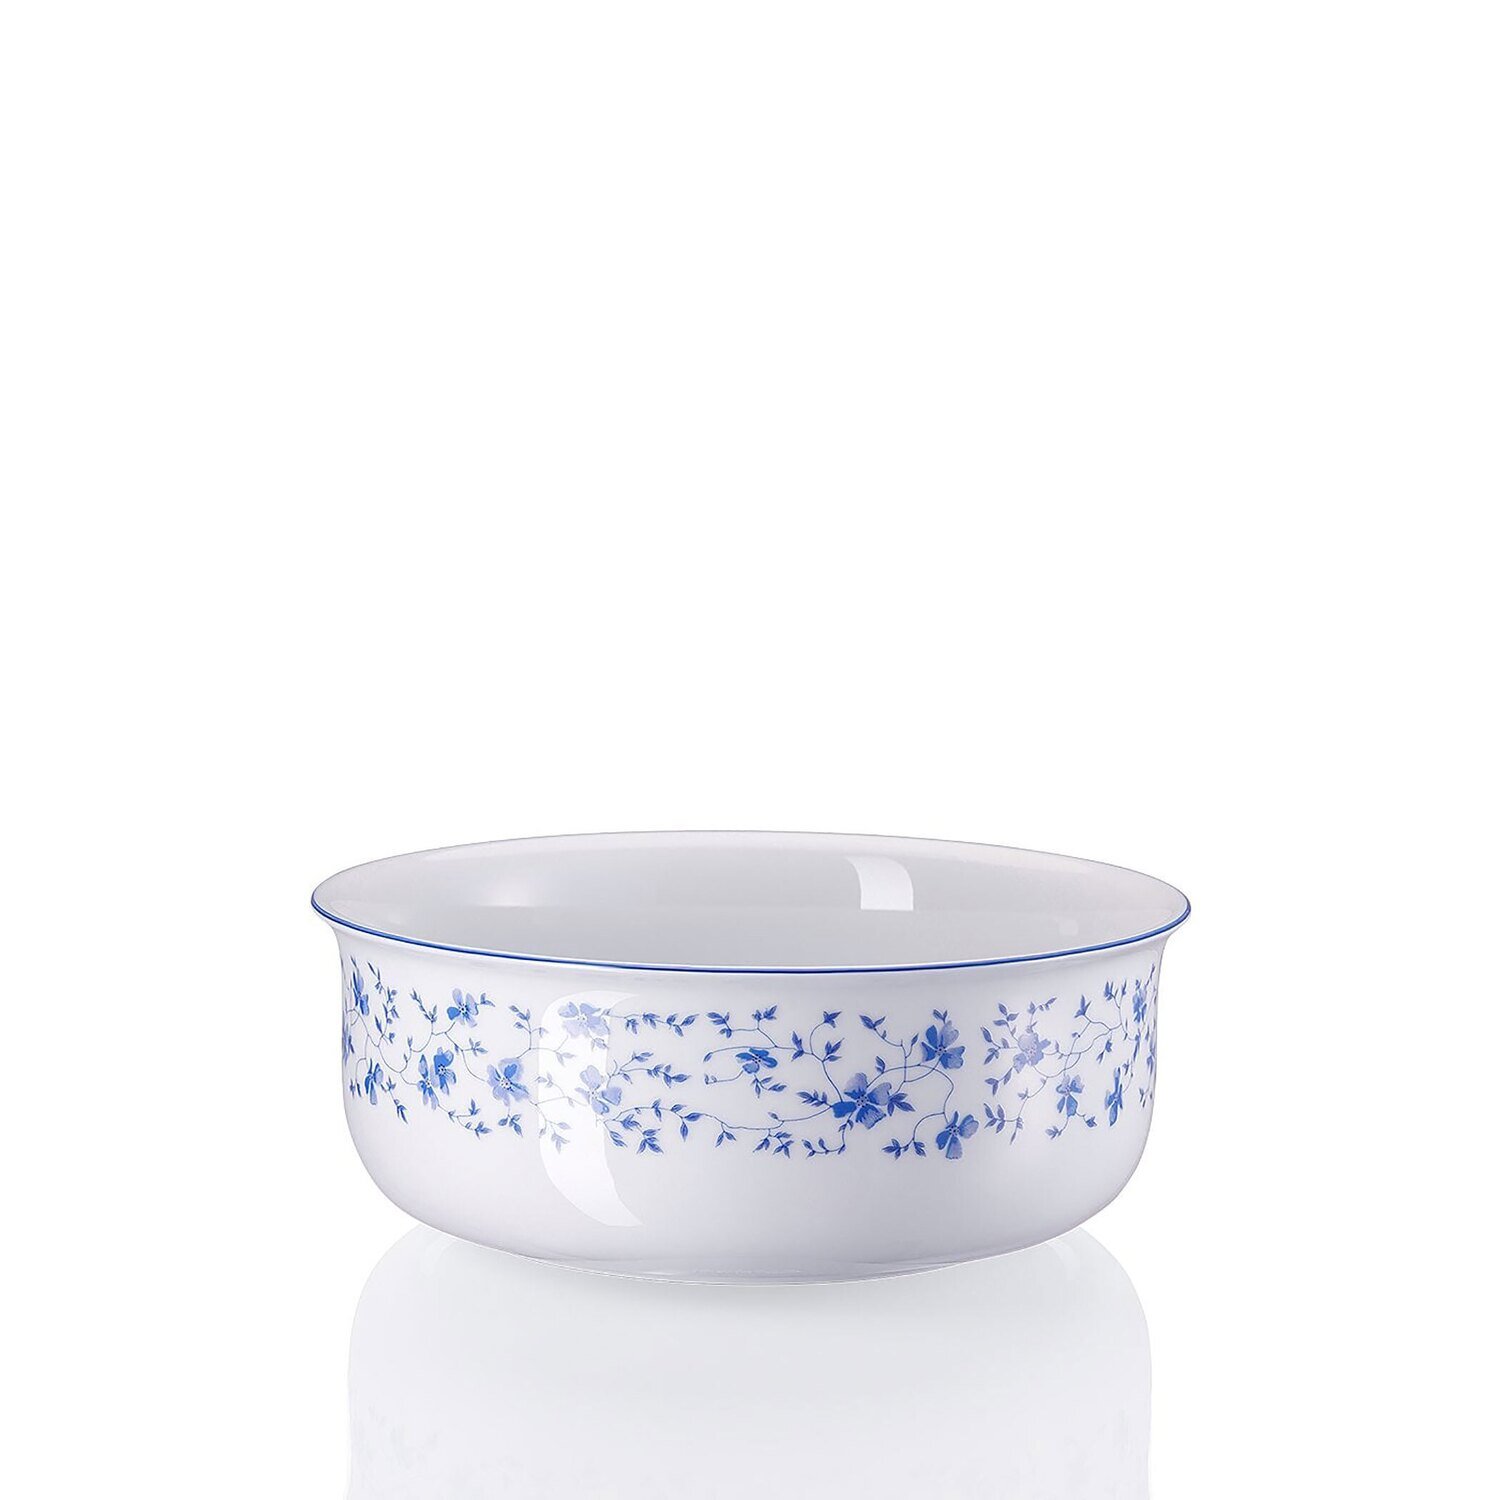 Arzberg Form 1382 Blaubluten Bowl 22 Cm